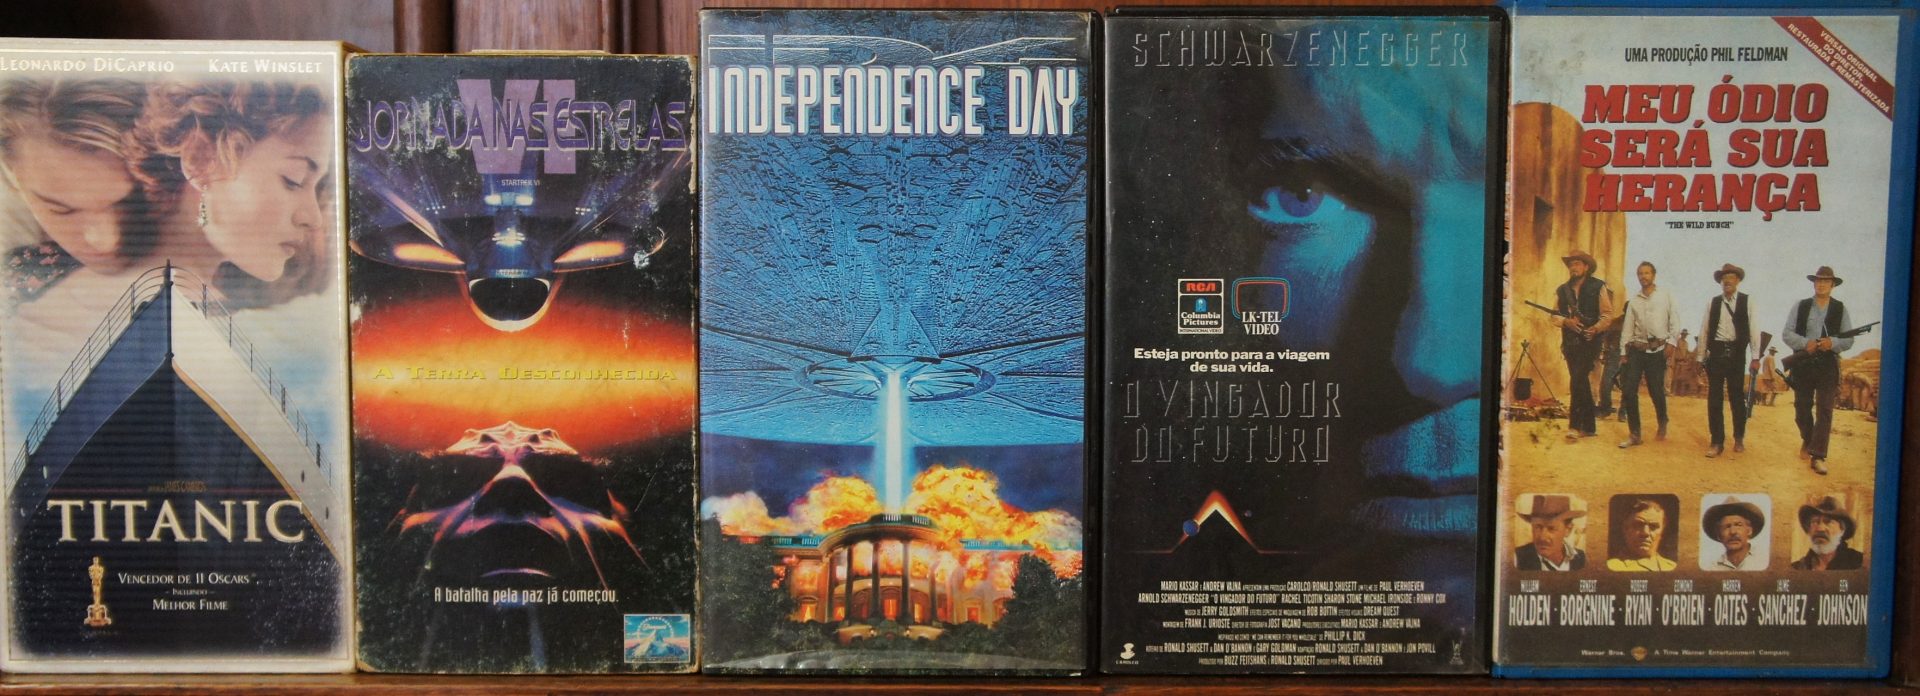 DSC00169 - A importância dos filmes em VHS na minha vida